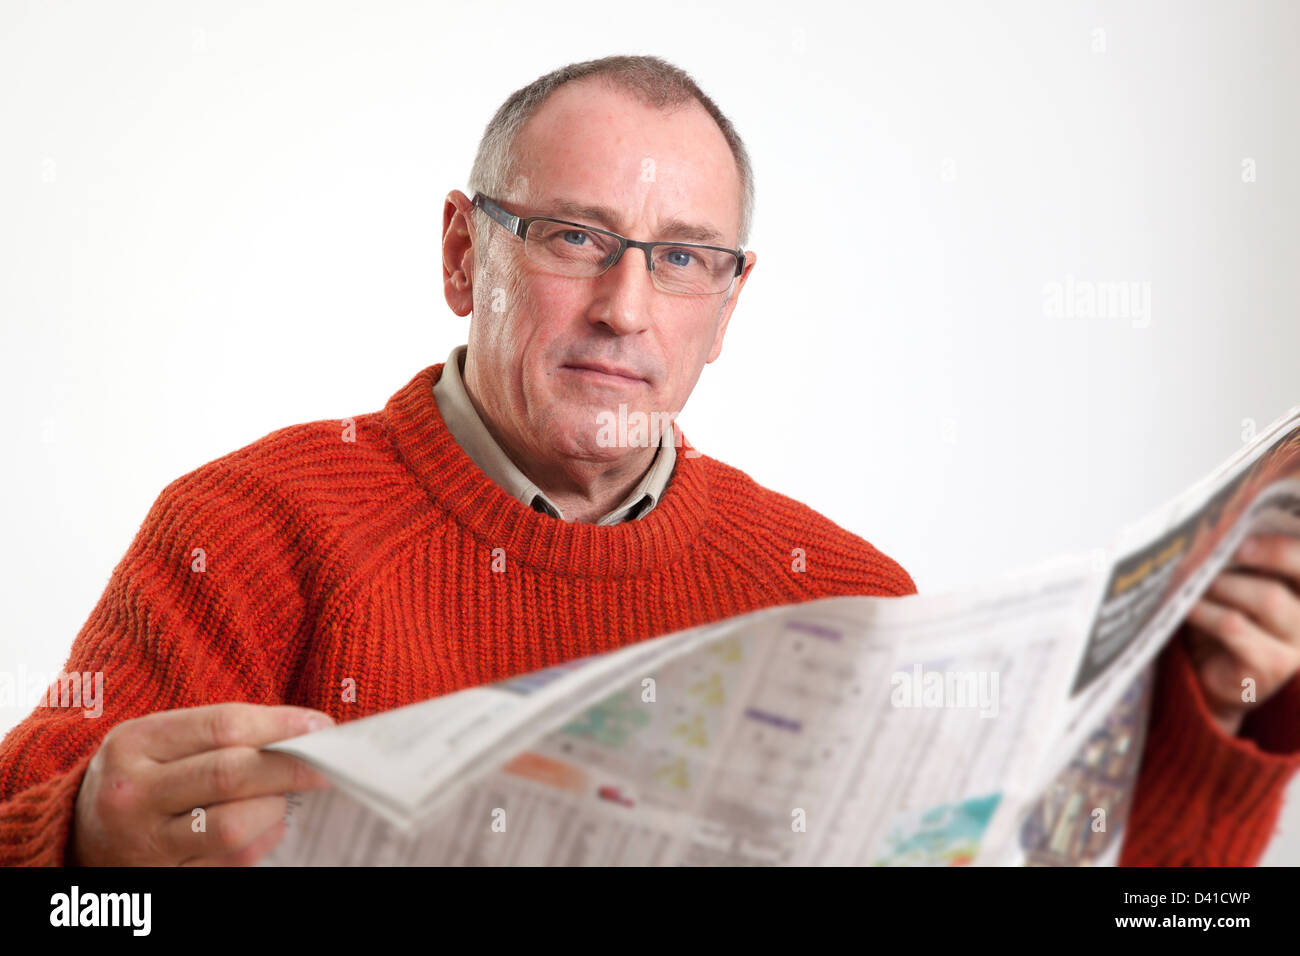 Homme mûr en 50s le port de chandail, la lecture d'un journal grand format, à la caméra à grave. Banque D'Images